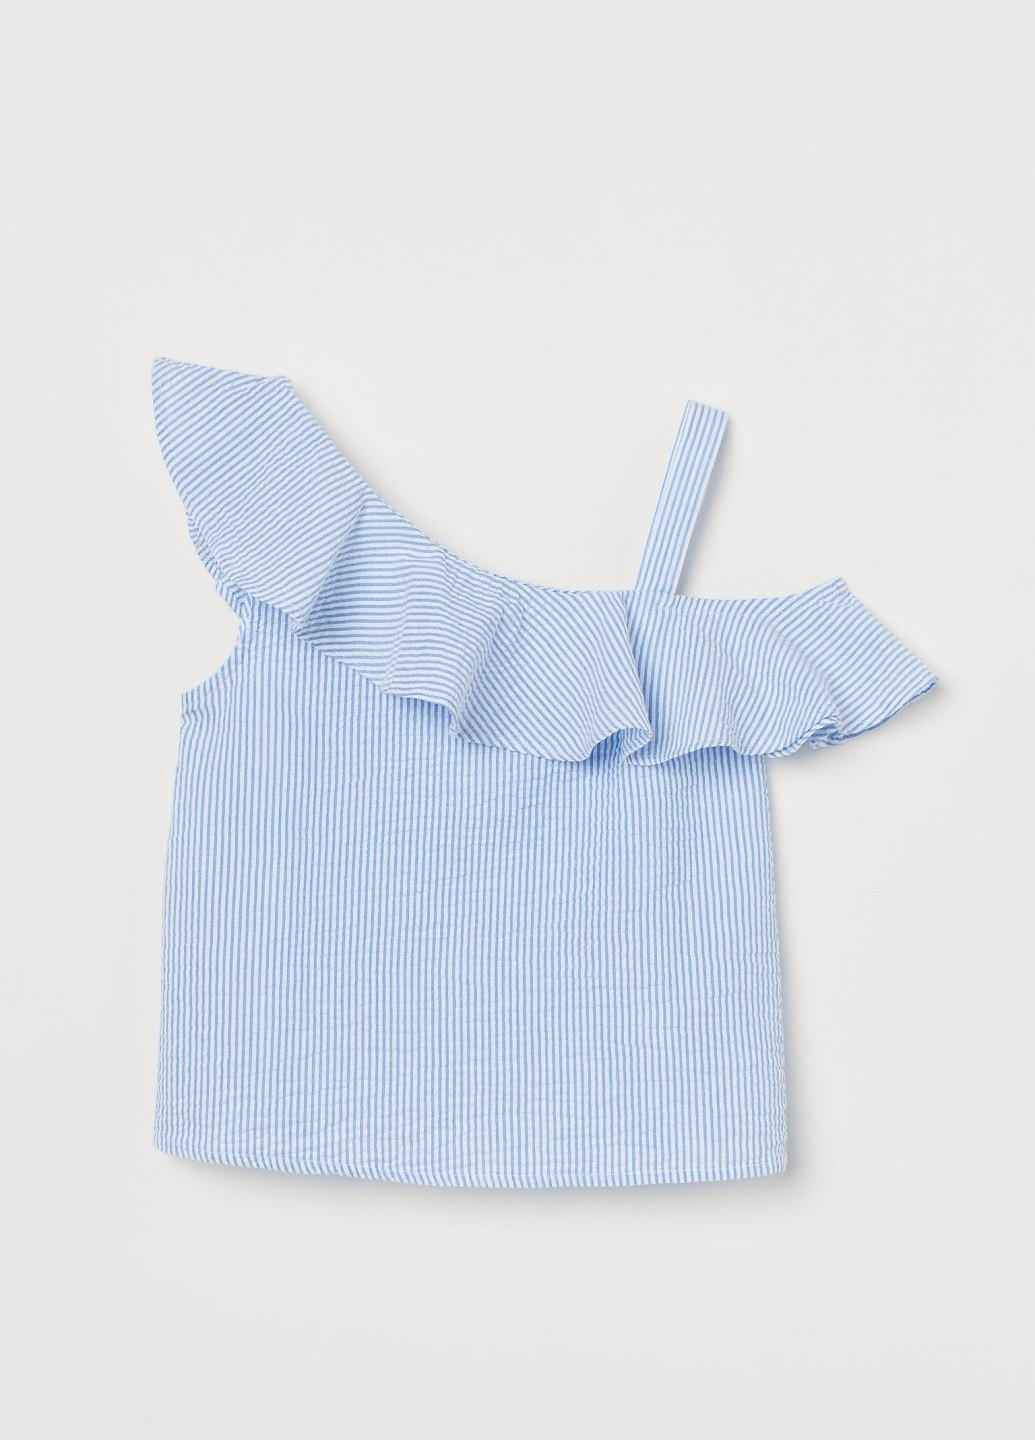 Синяя в полоску блузка H&M летняя